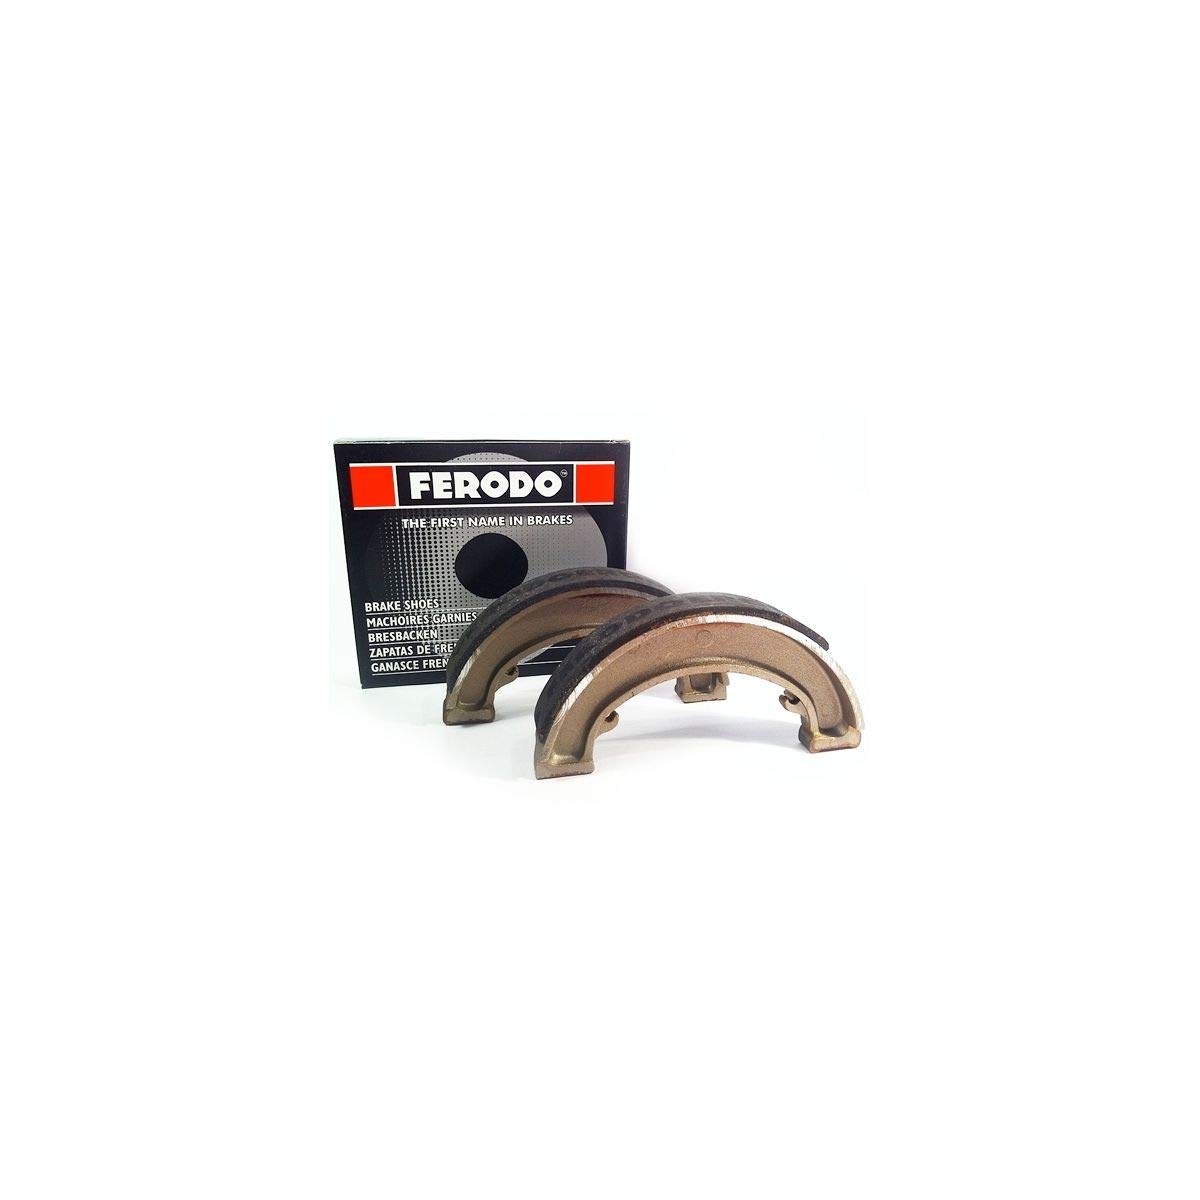 Ferodo Bremsbacken fsb708 (Trommelbremse und Backen)/Brake Shoes fsb708 (BRAKE DRUM AND CLAMPING Jaws) von Ferodo